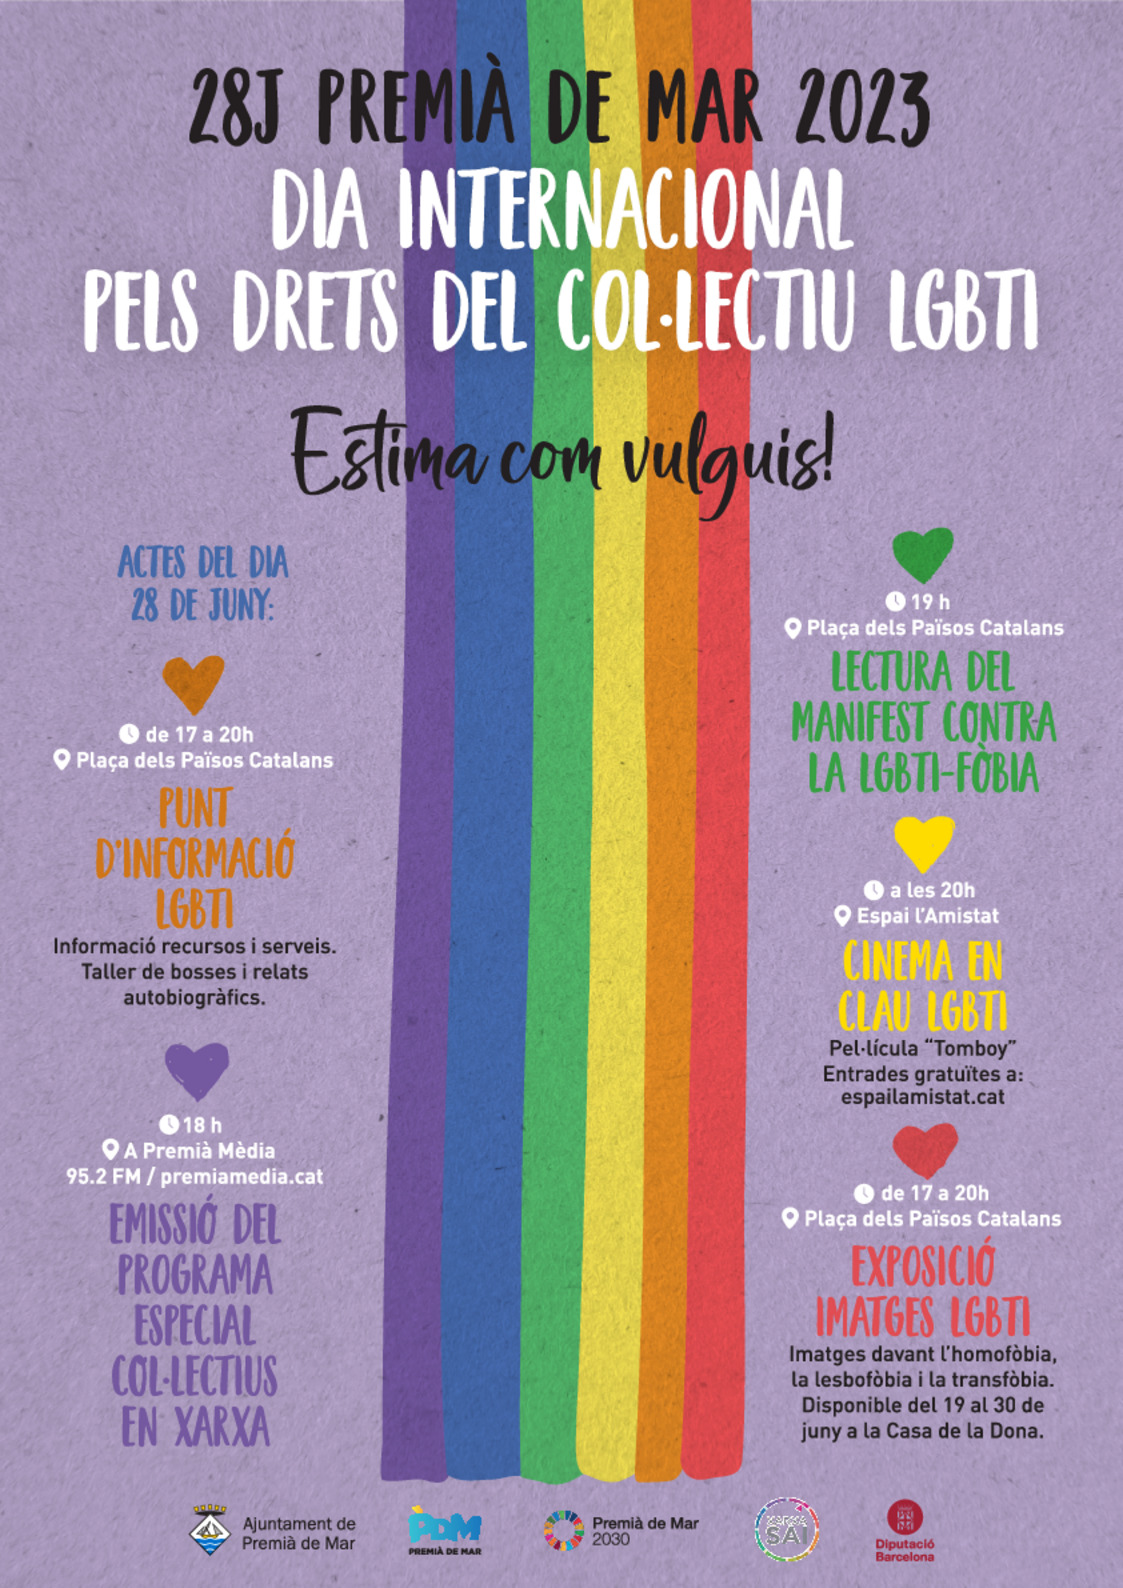 Exposició imatges LGBTI